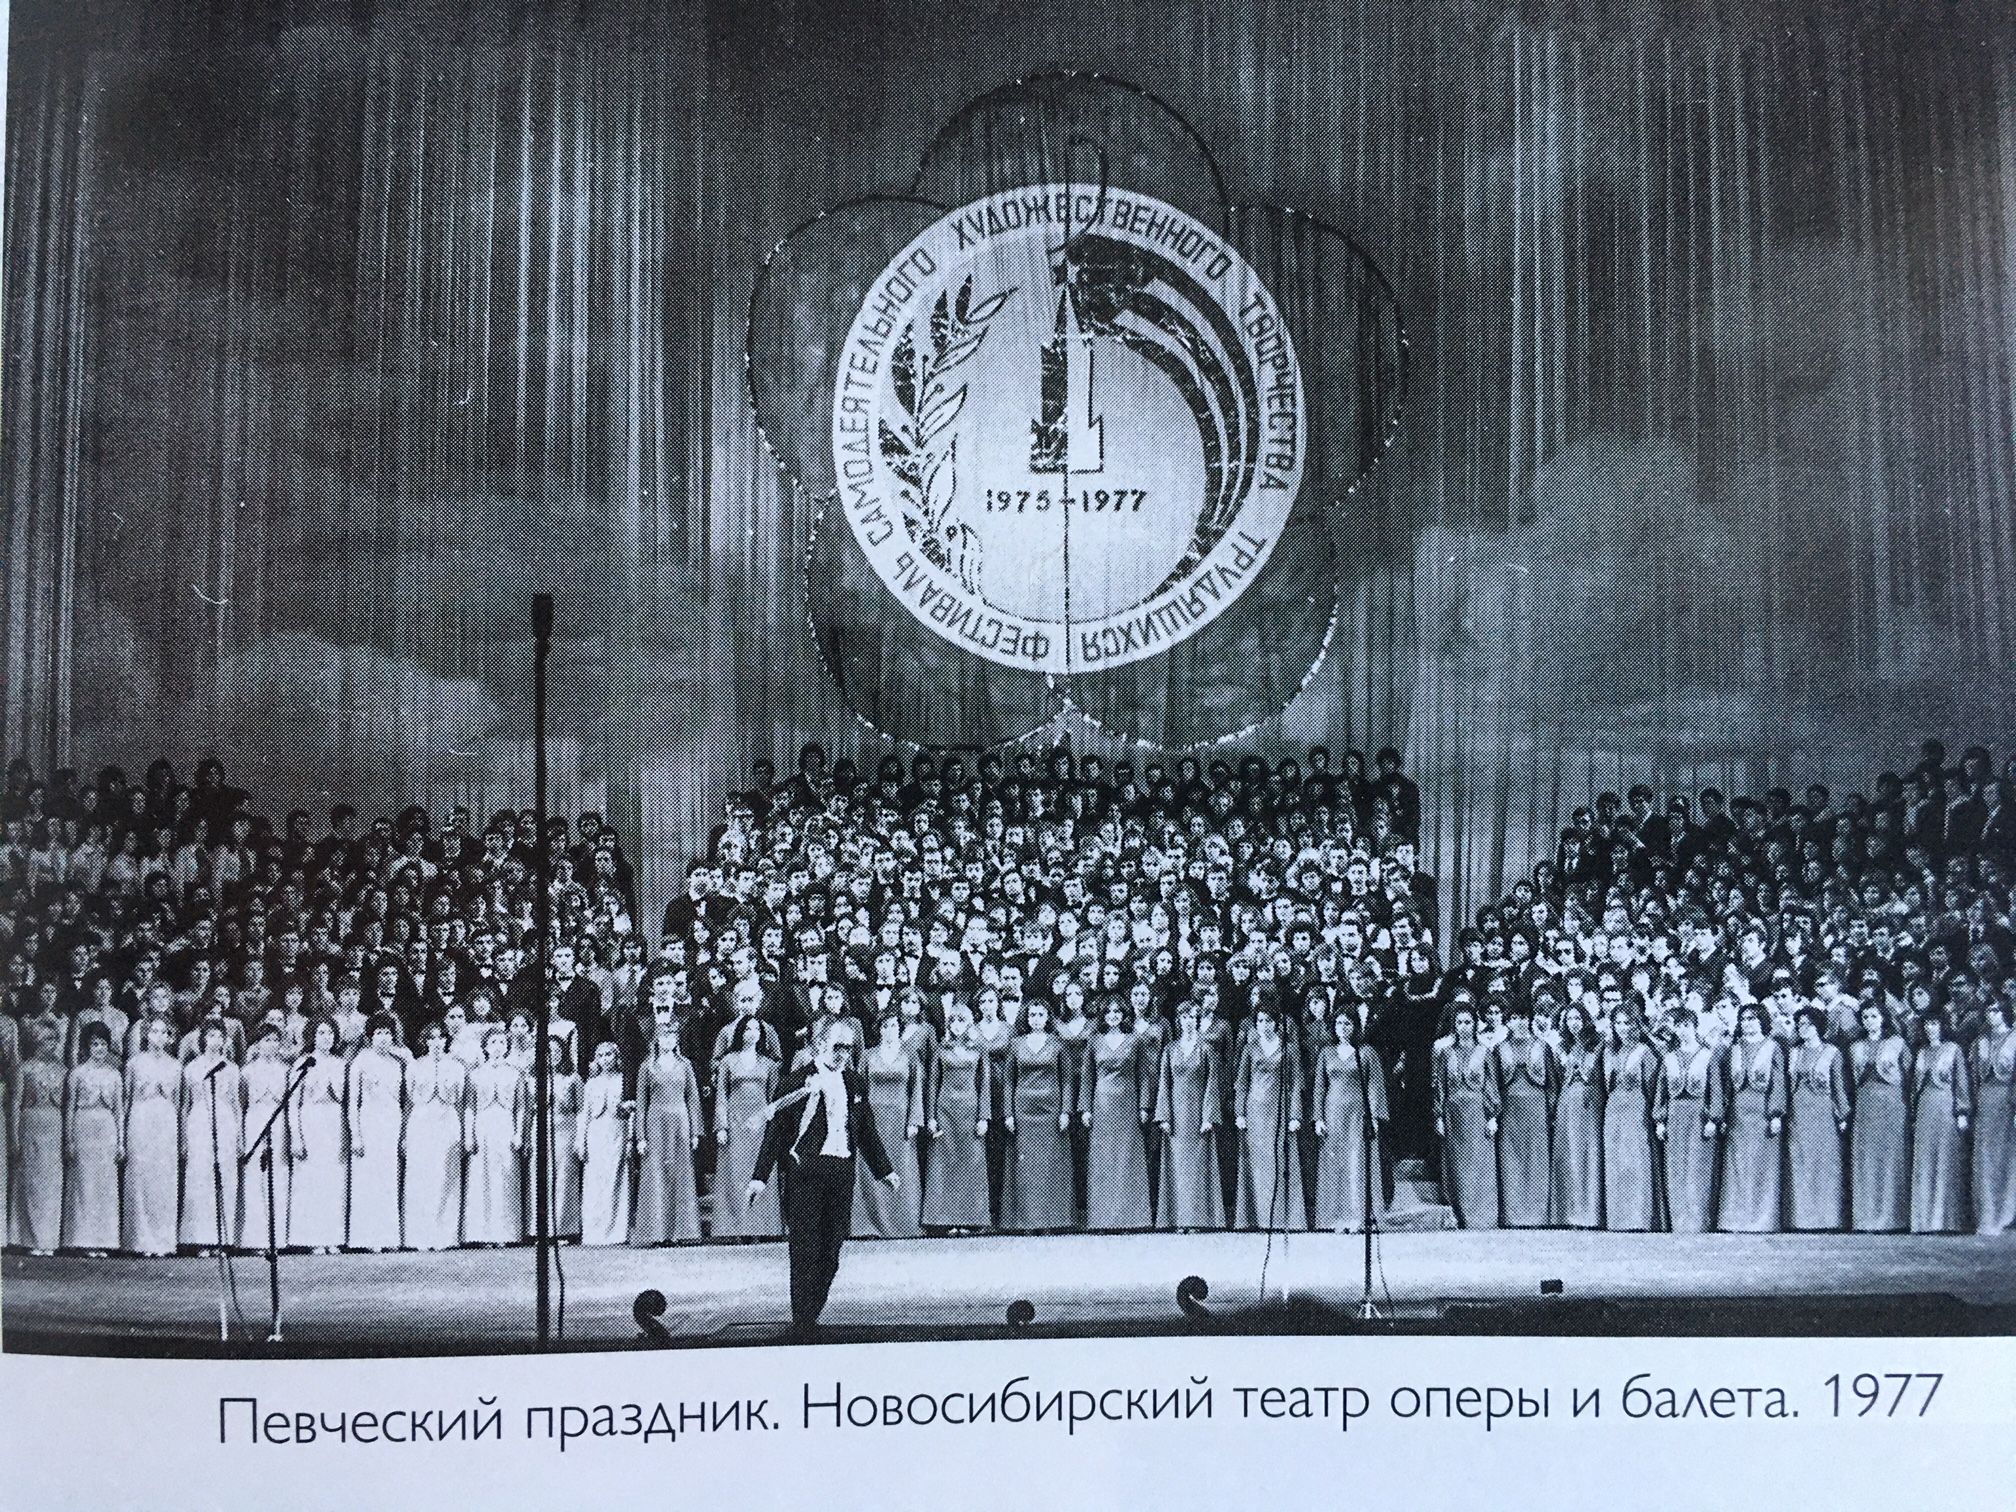 Праздник песни Новосибирск 1977 г. дирижер Брагинский Ю.А.